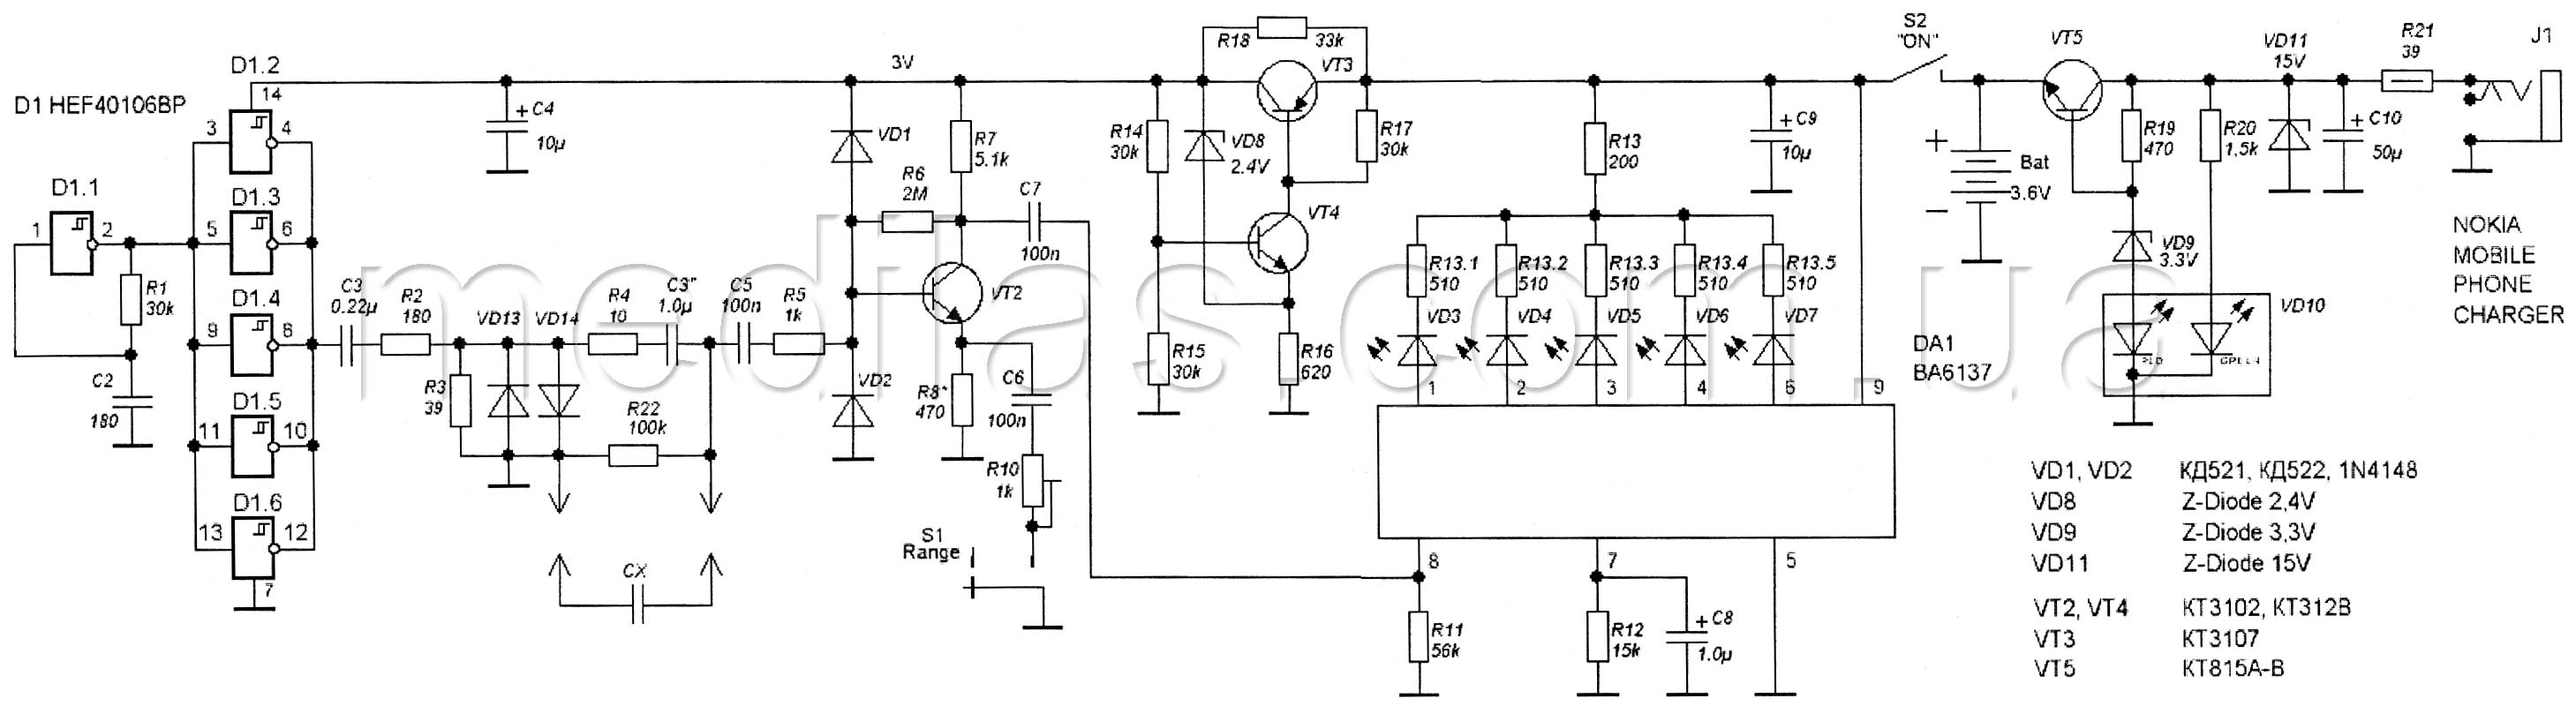 Принципиальная схема пробника - индикатора ESR электролитических конденсаторов